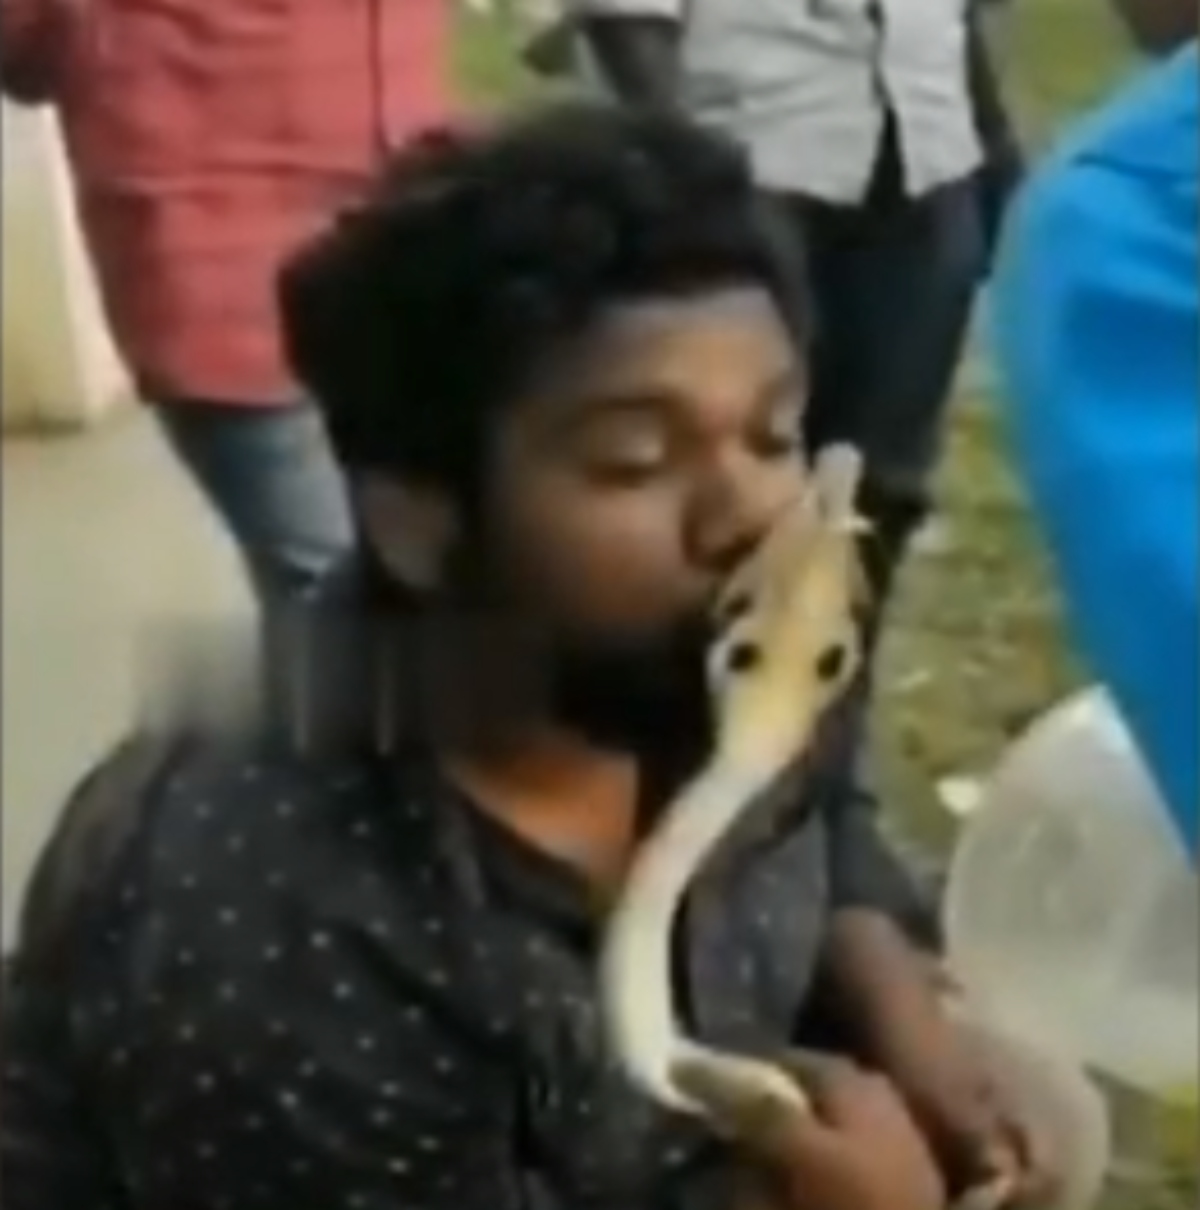  Homem é picado na boca enquanto beijava cobra venenosa 